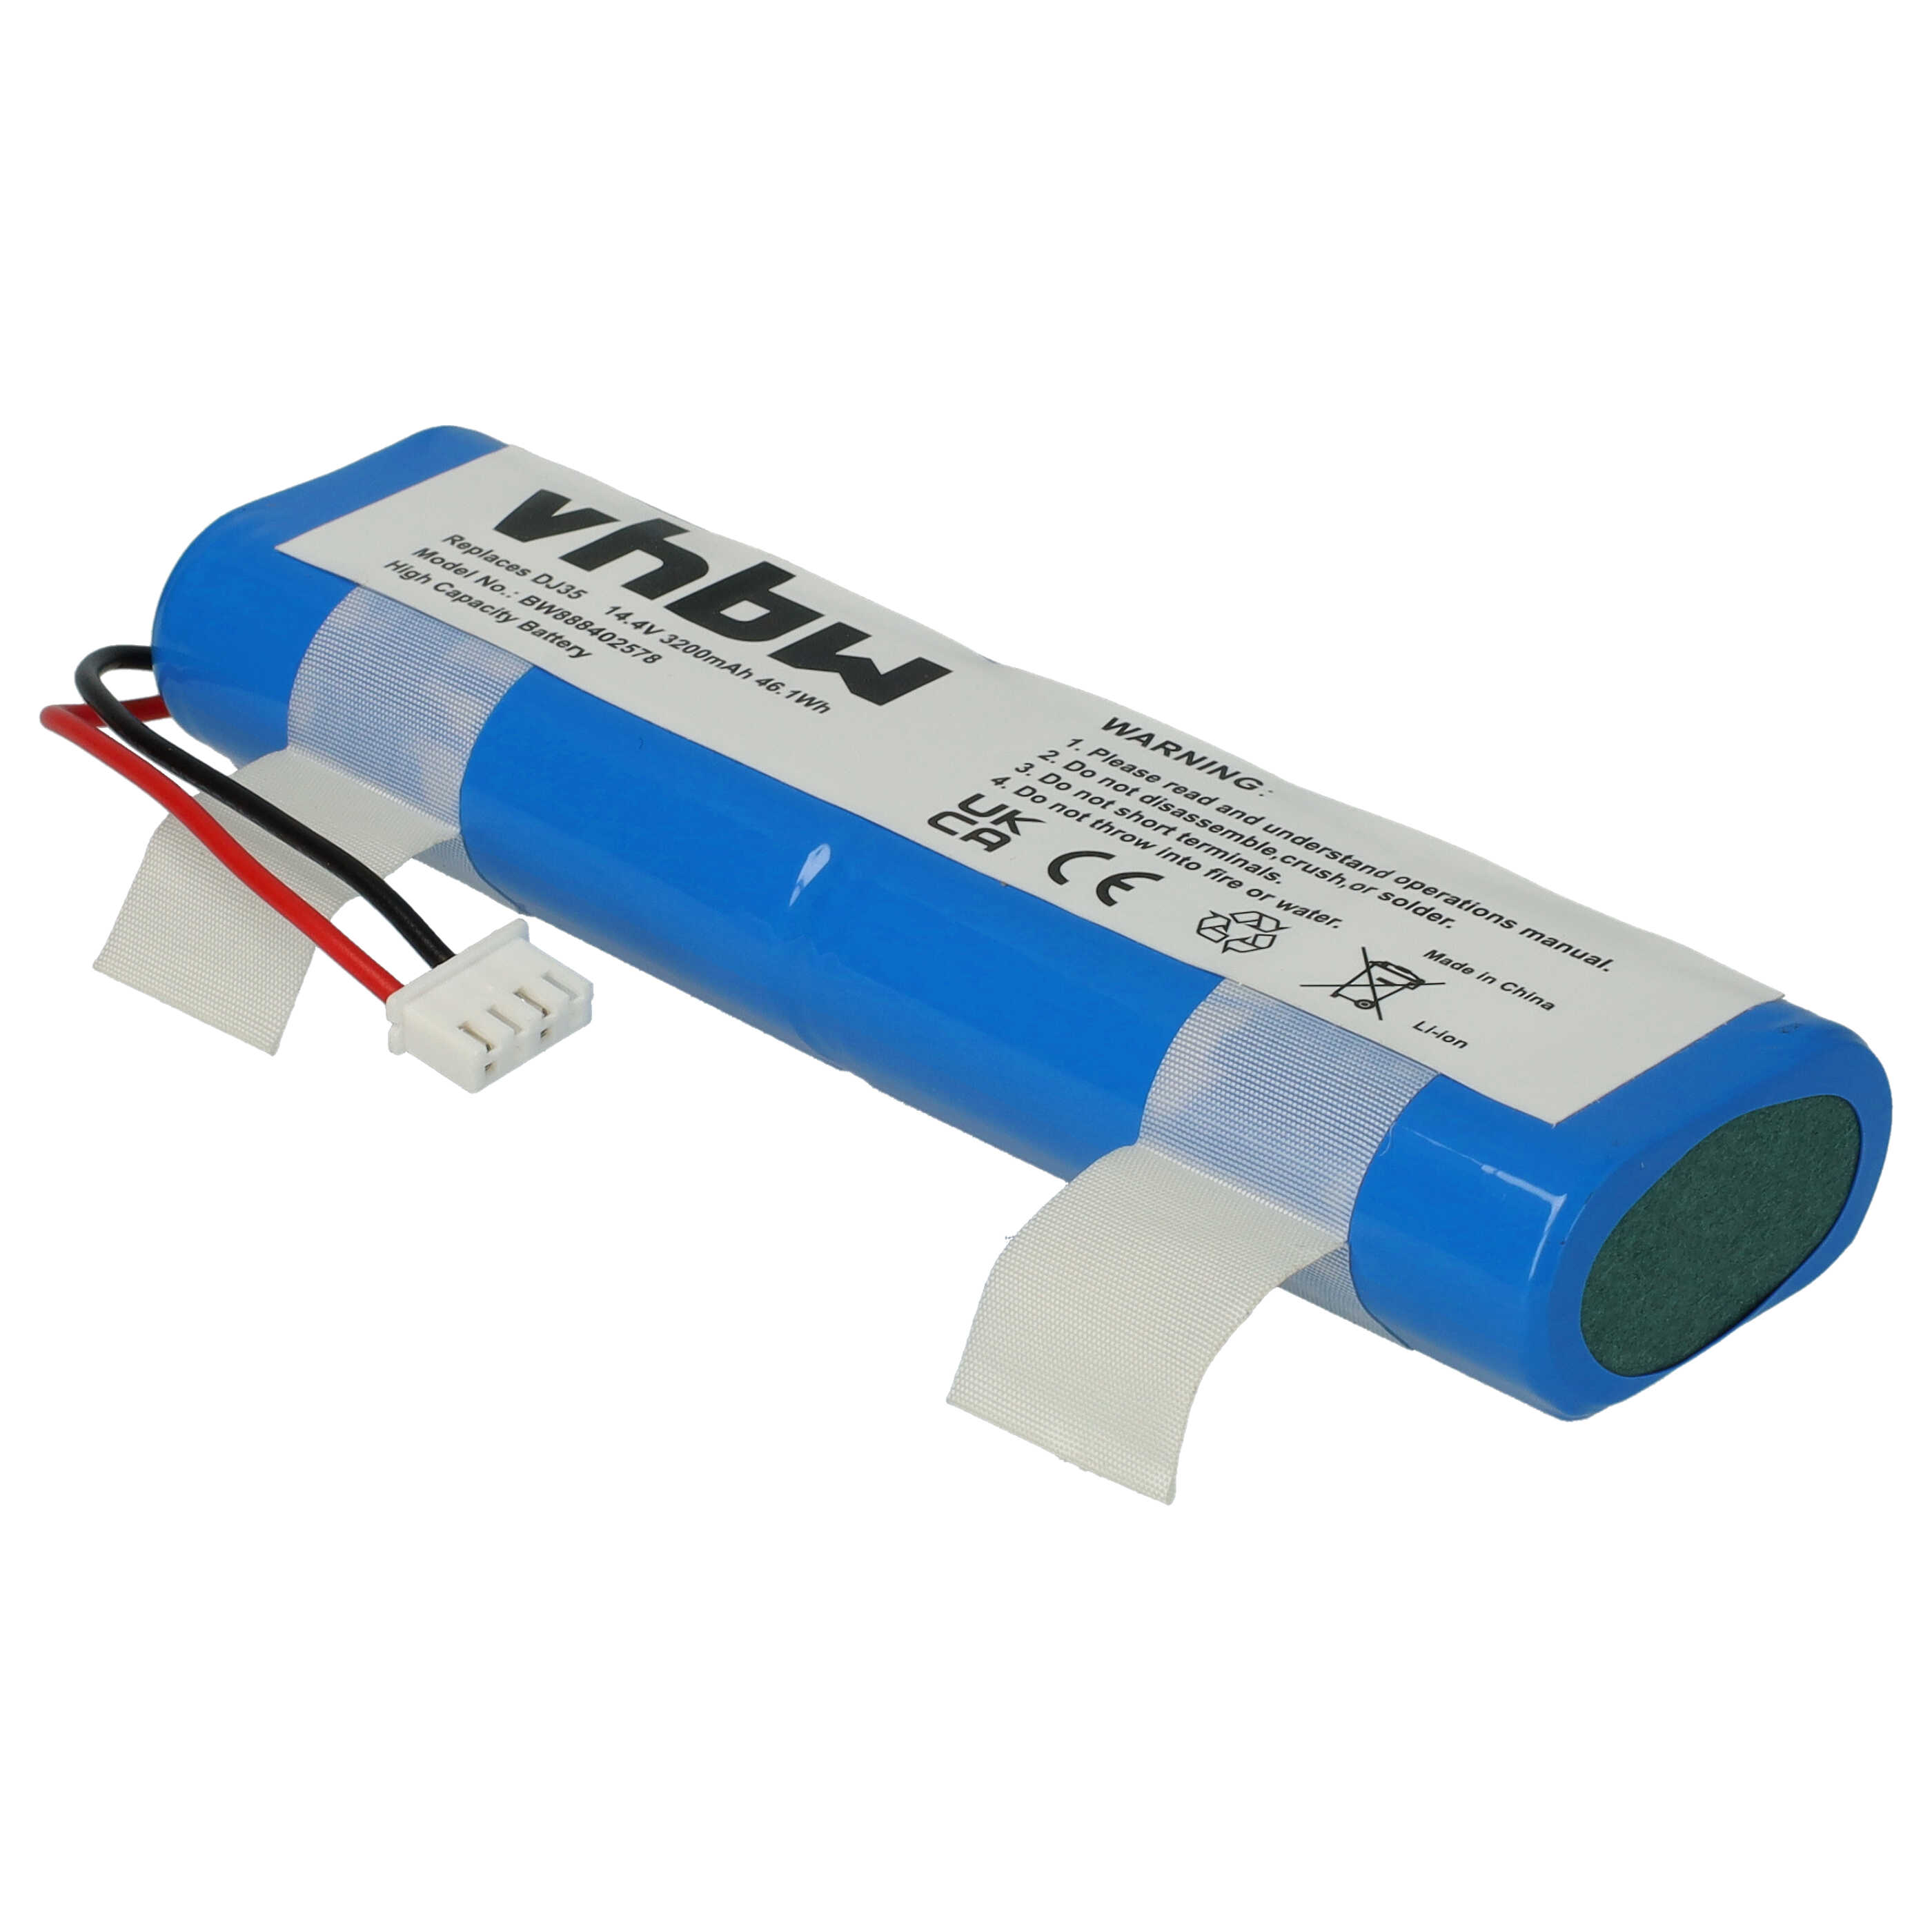 Batterie remplace Ecovacs S08-LI-144-2500 pour robot aspirateur - 3200mAh 14,4V Li-ion